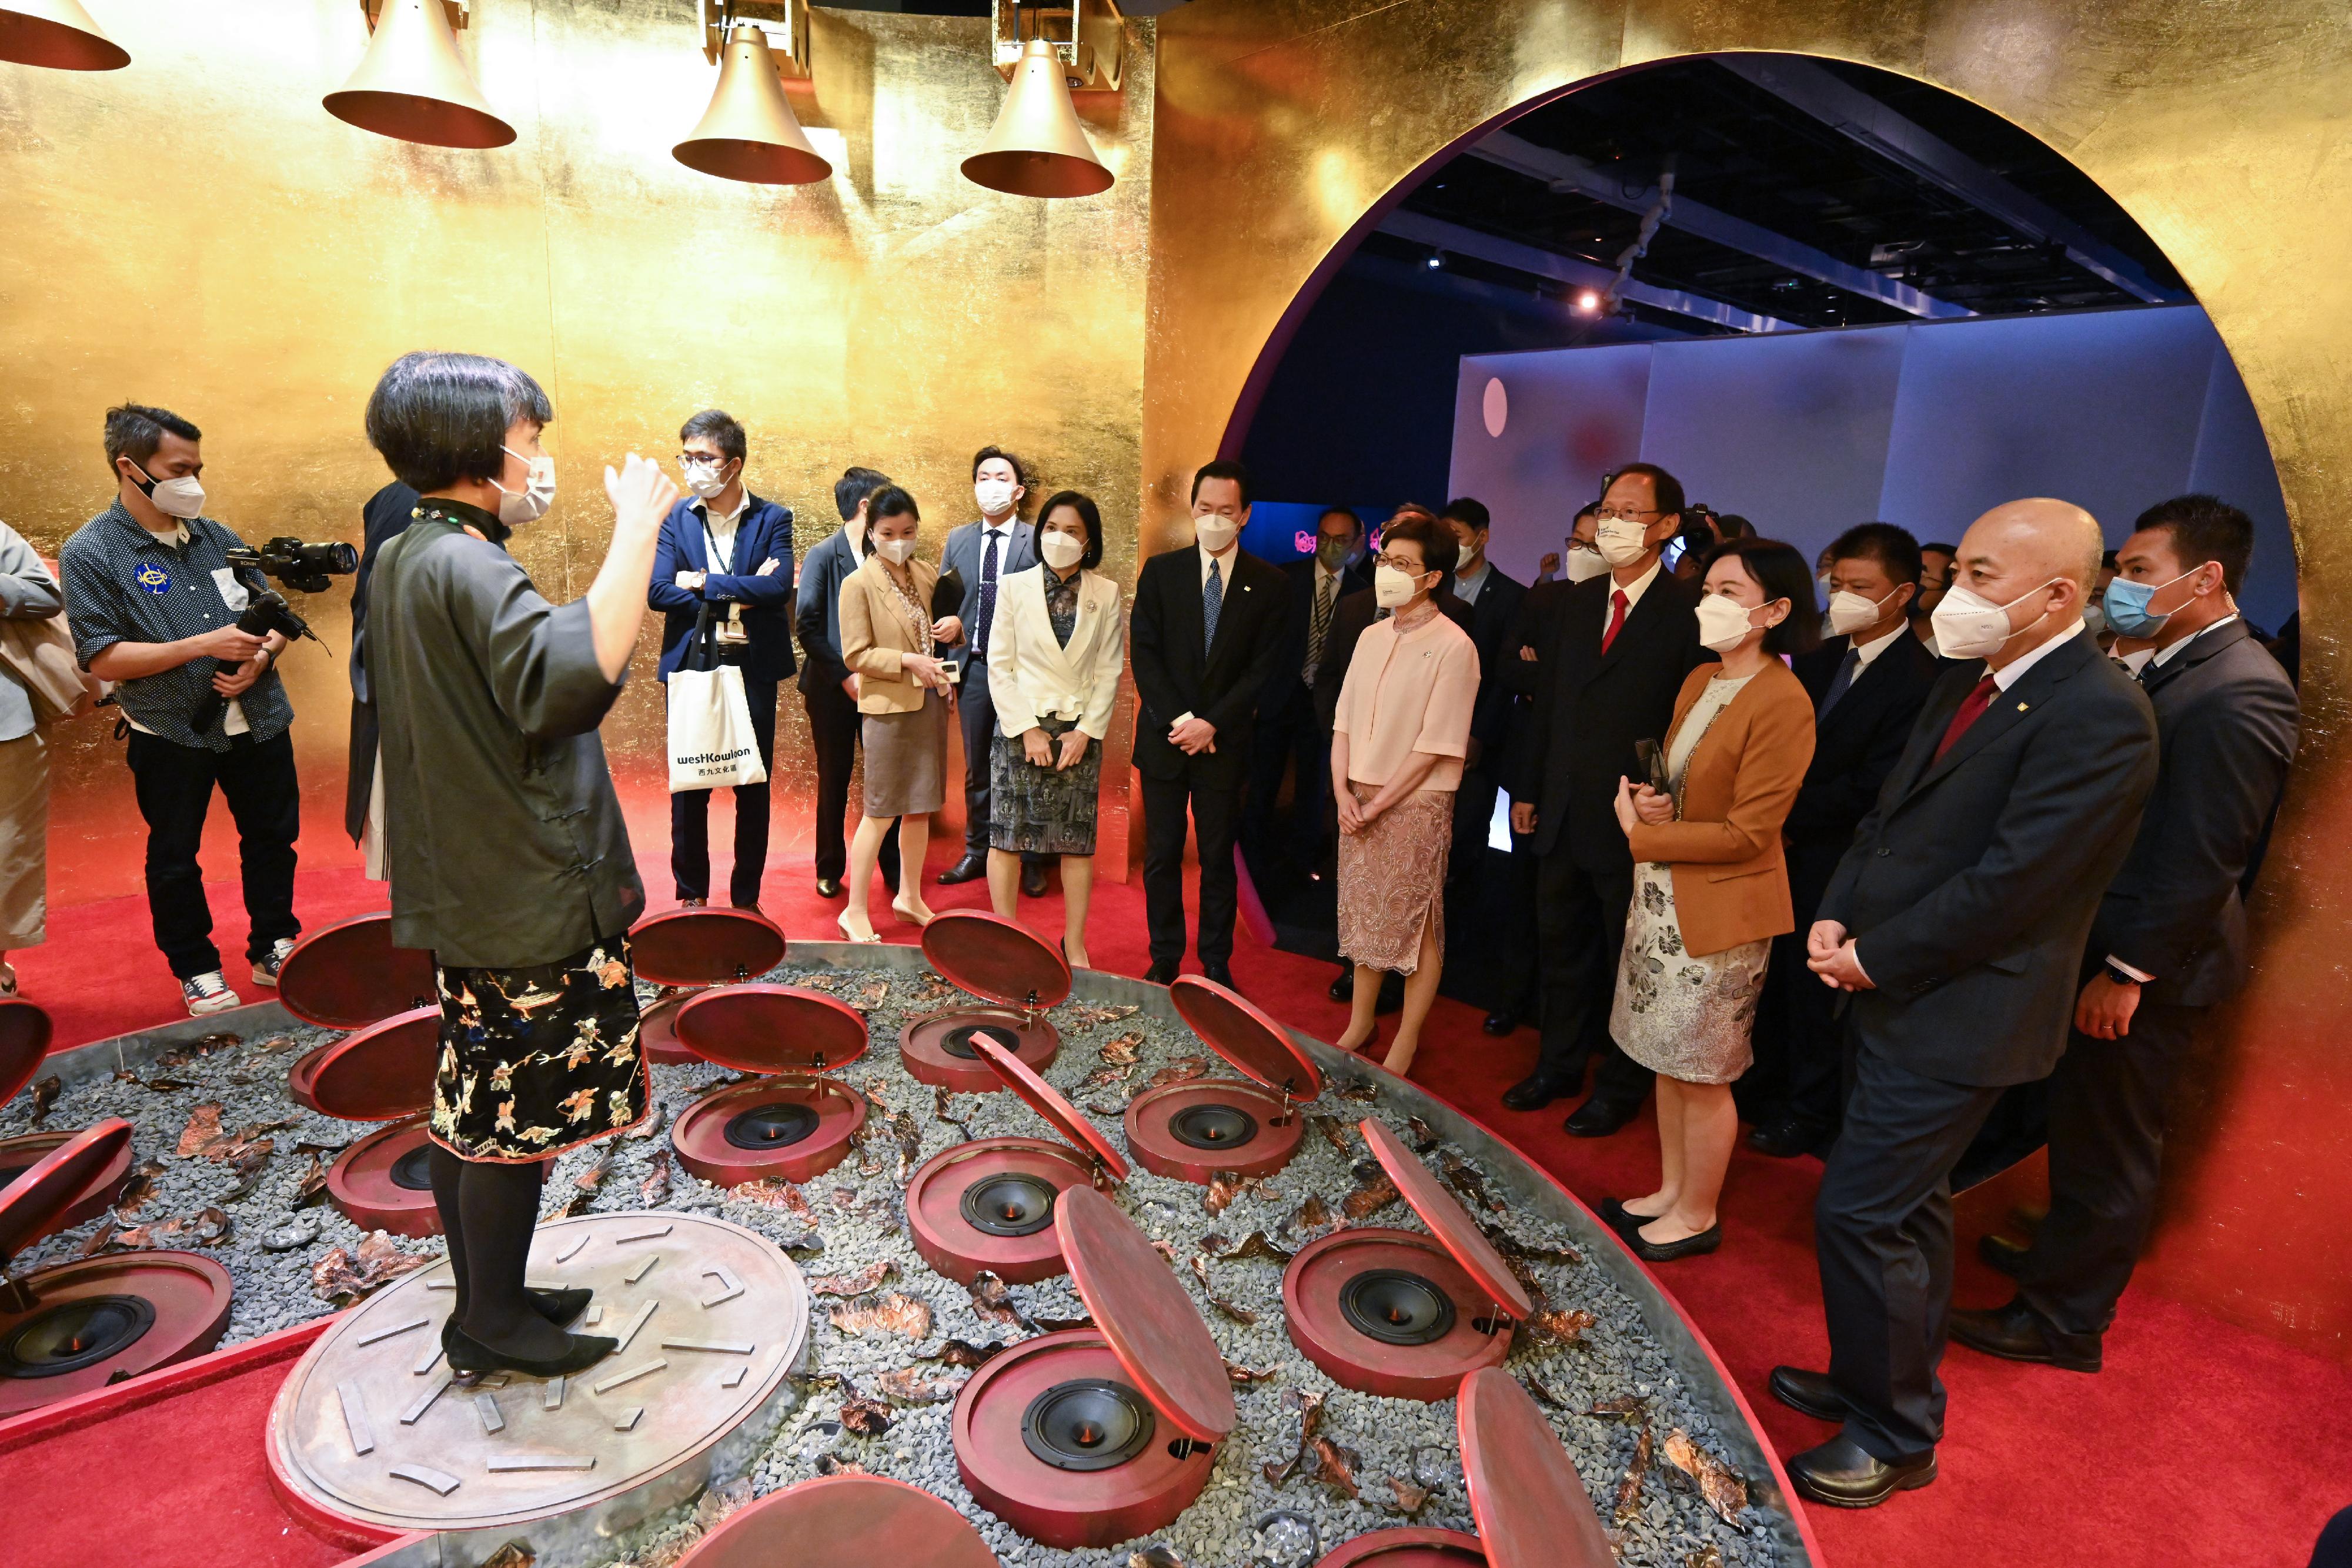 行政長官林鄭月娥今日（六月二十二日）出席香港故宮文化博物館開幕典禮。圖示林鄭月娥參觀館內展品。